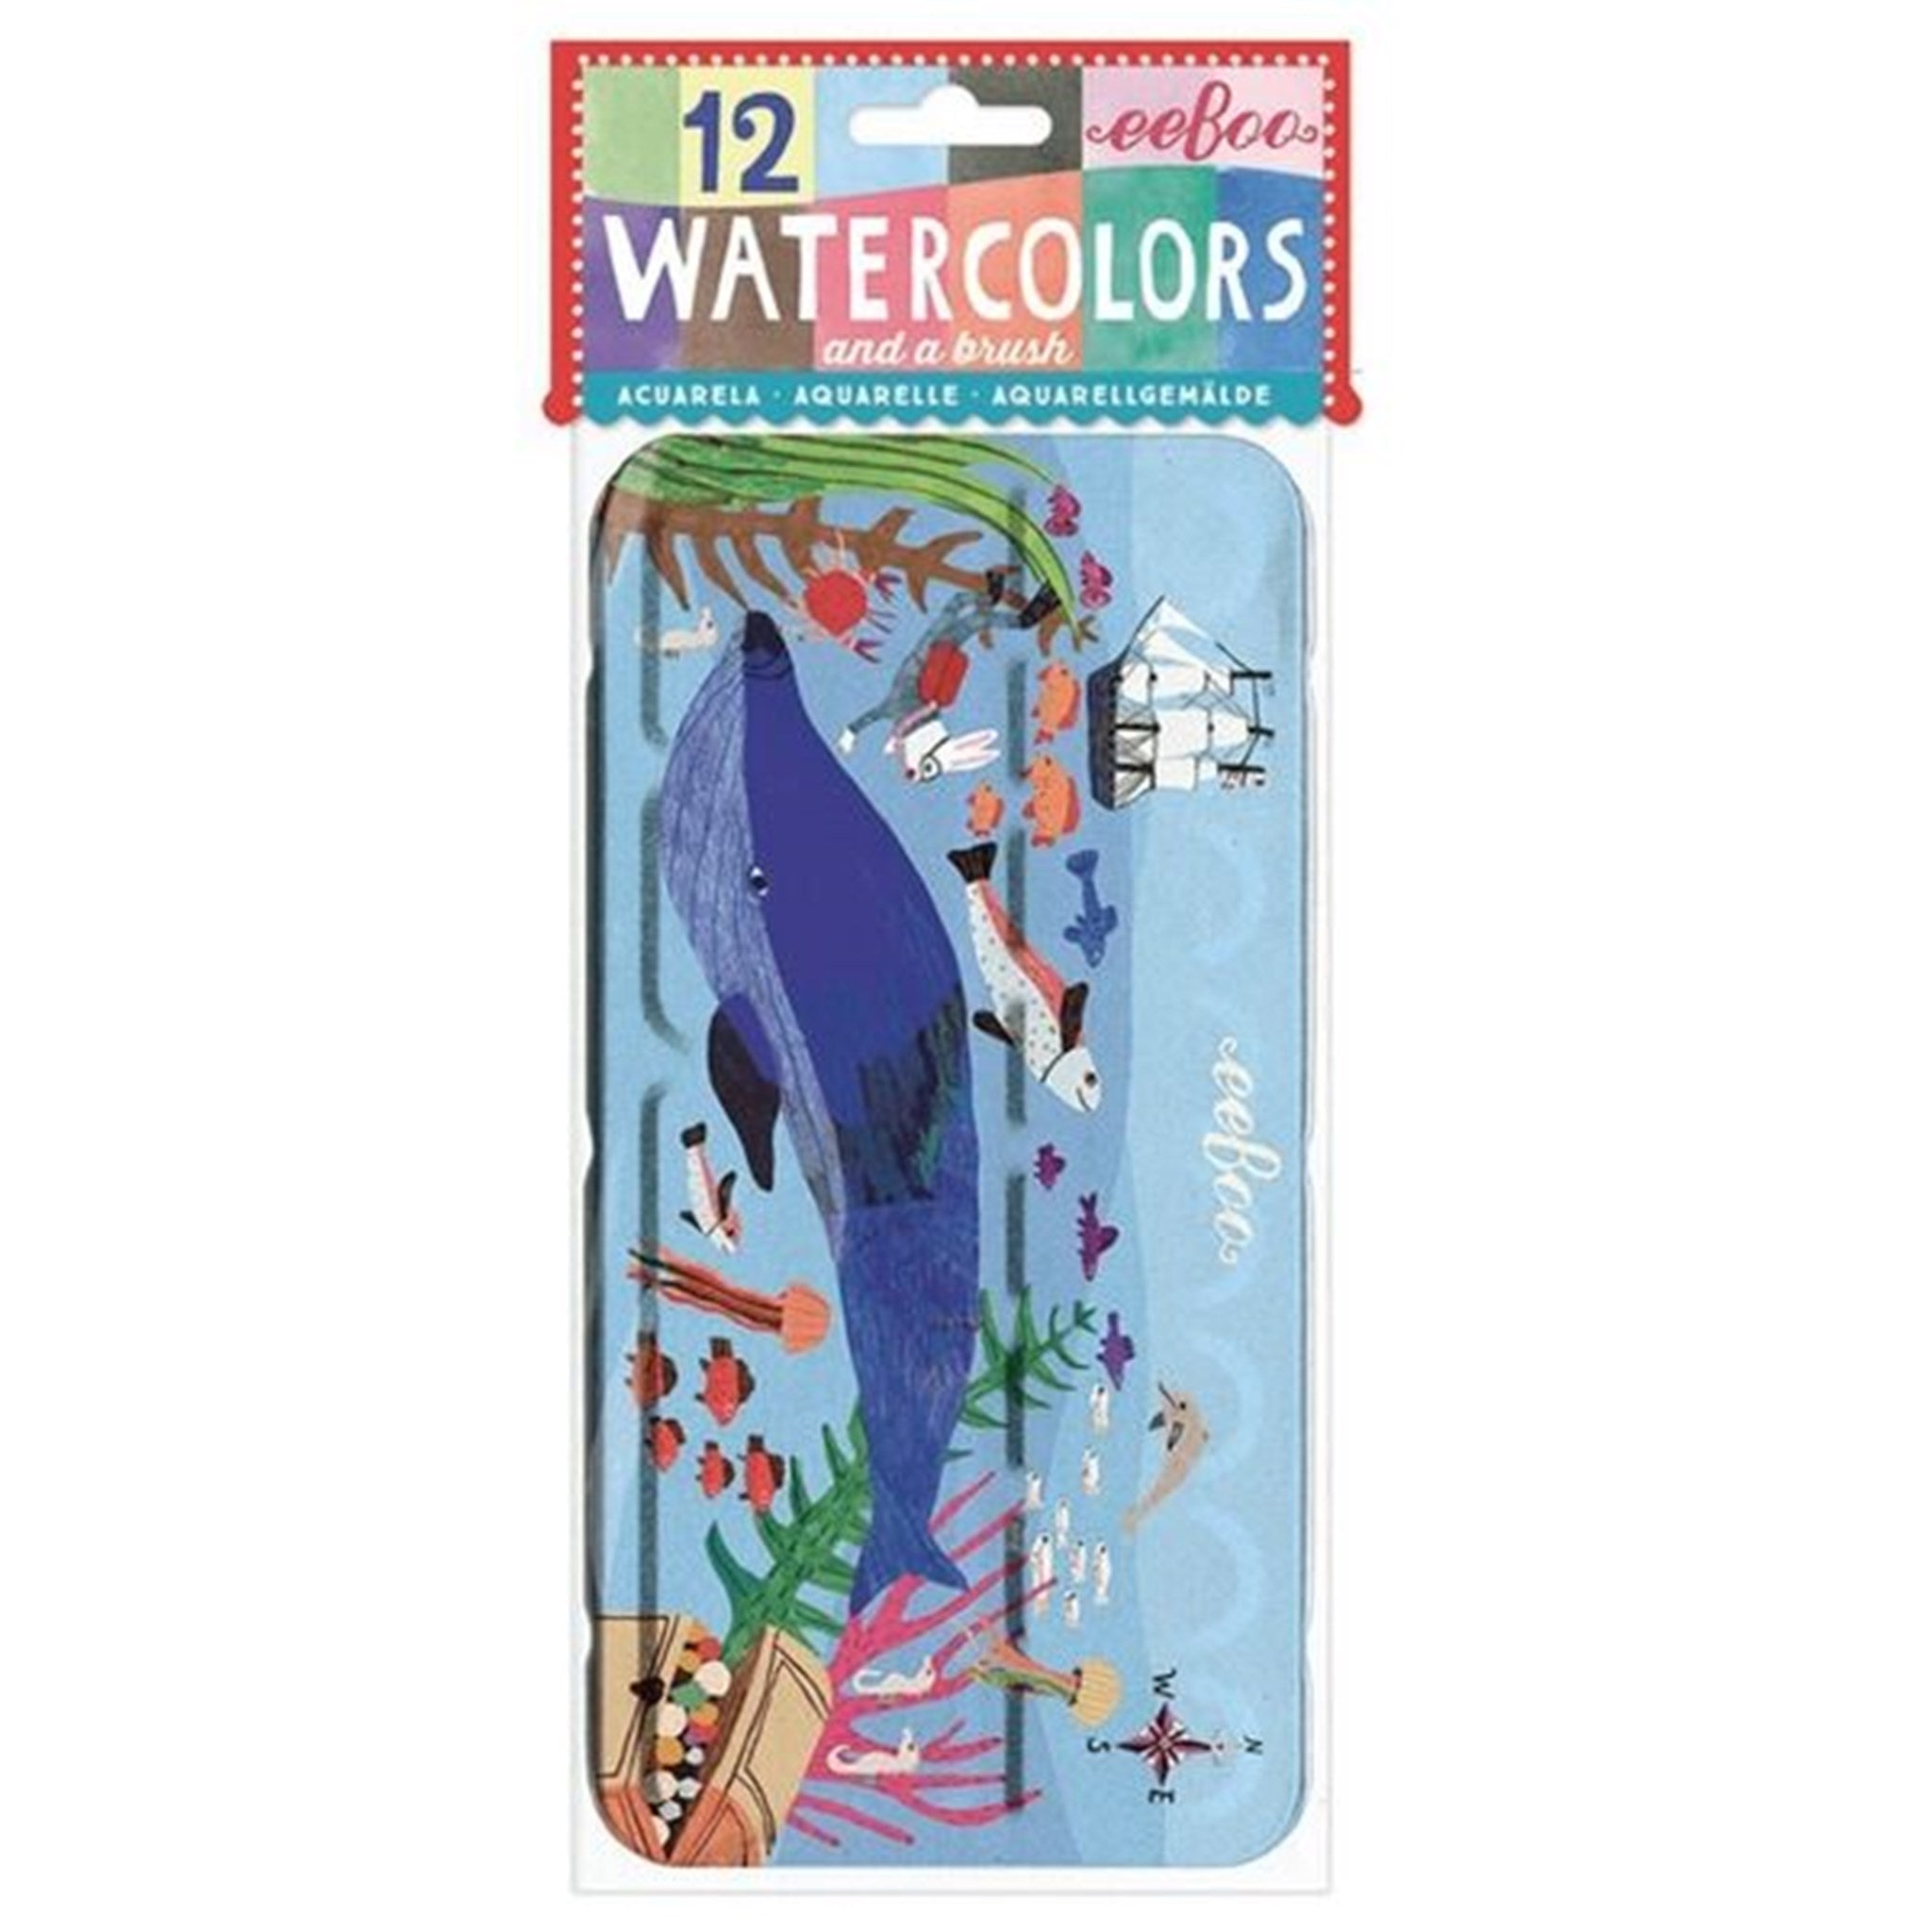 Eeboo 12 Watercolor Pencils - Under the Sea